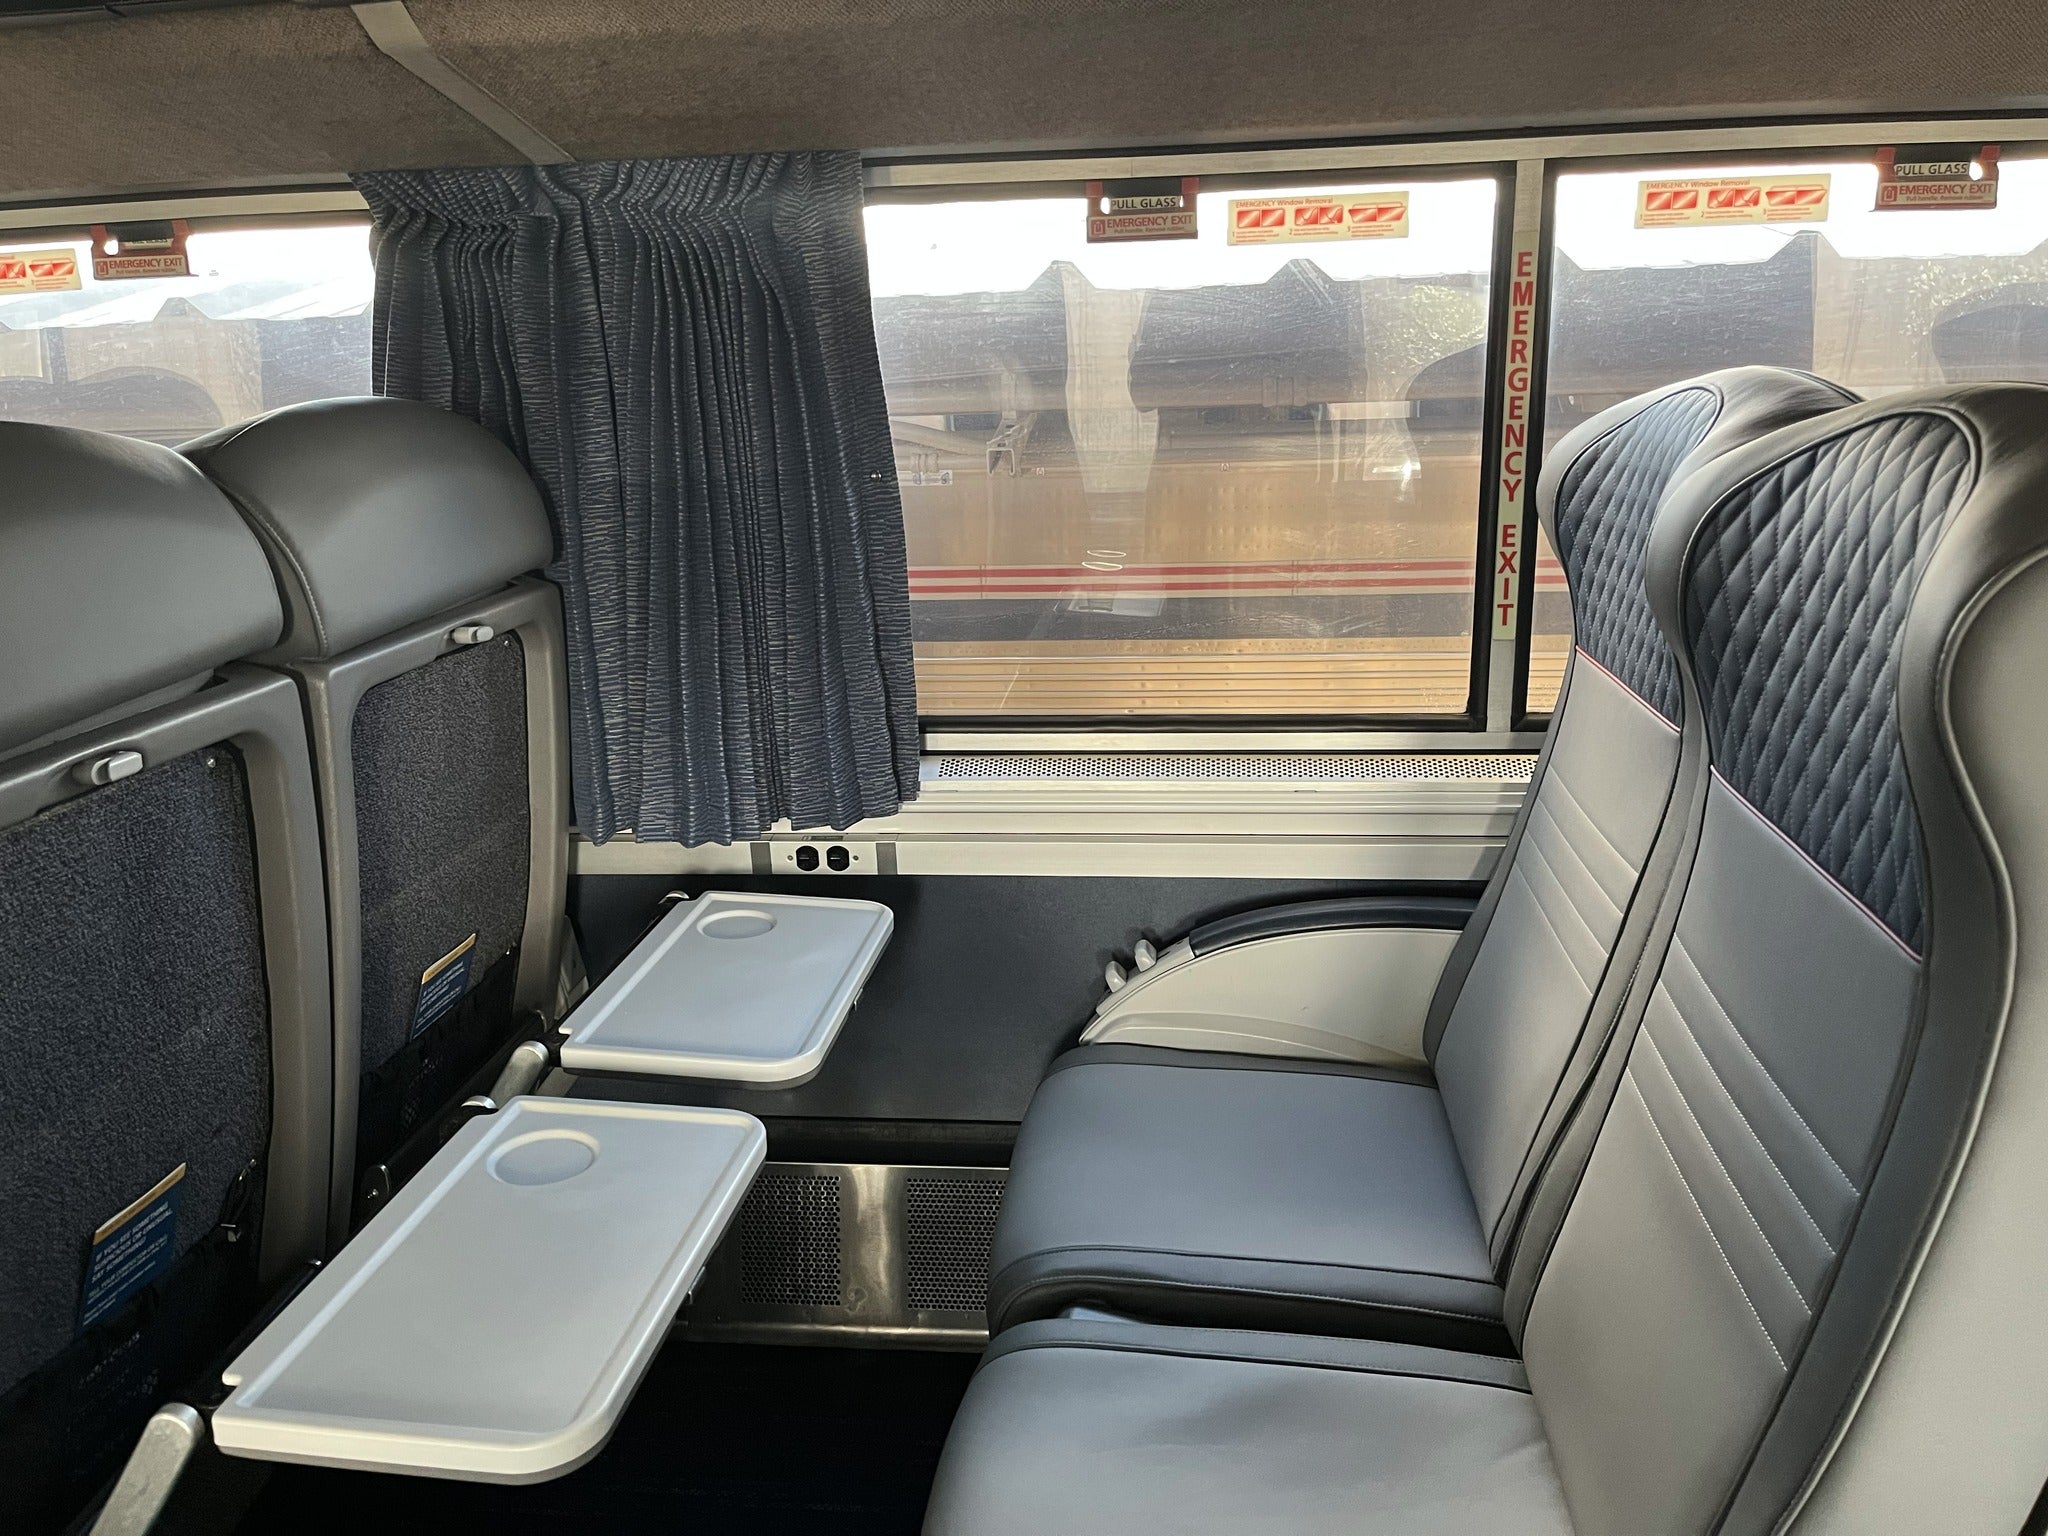 Amtrak Auto Train seats tray table